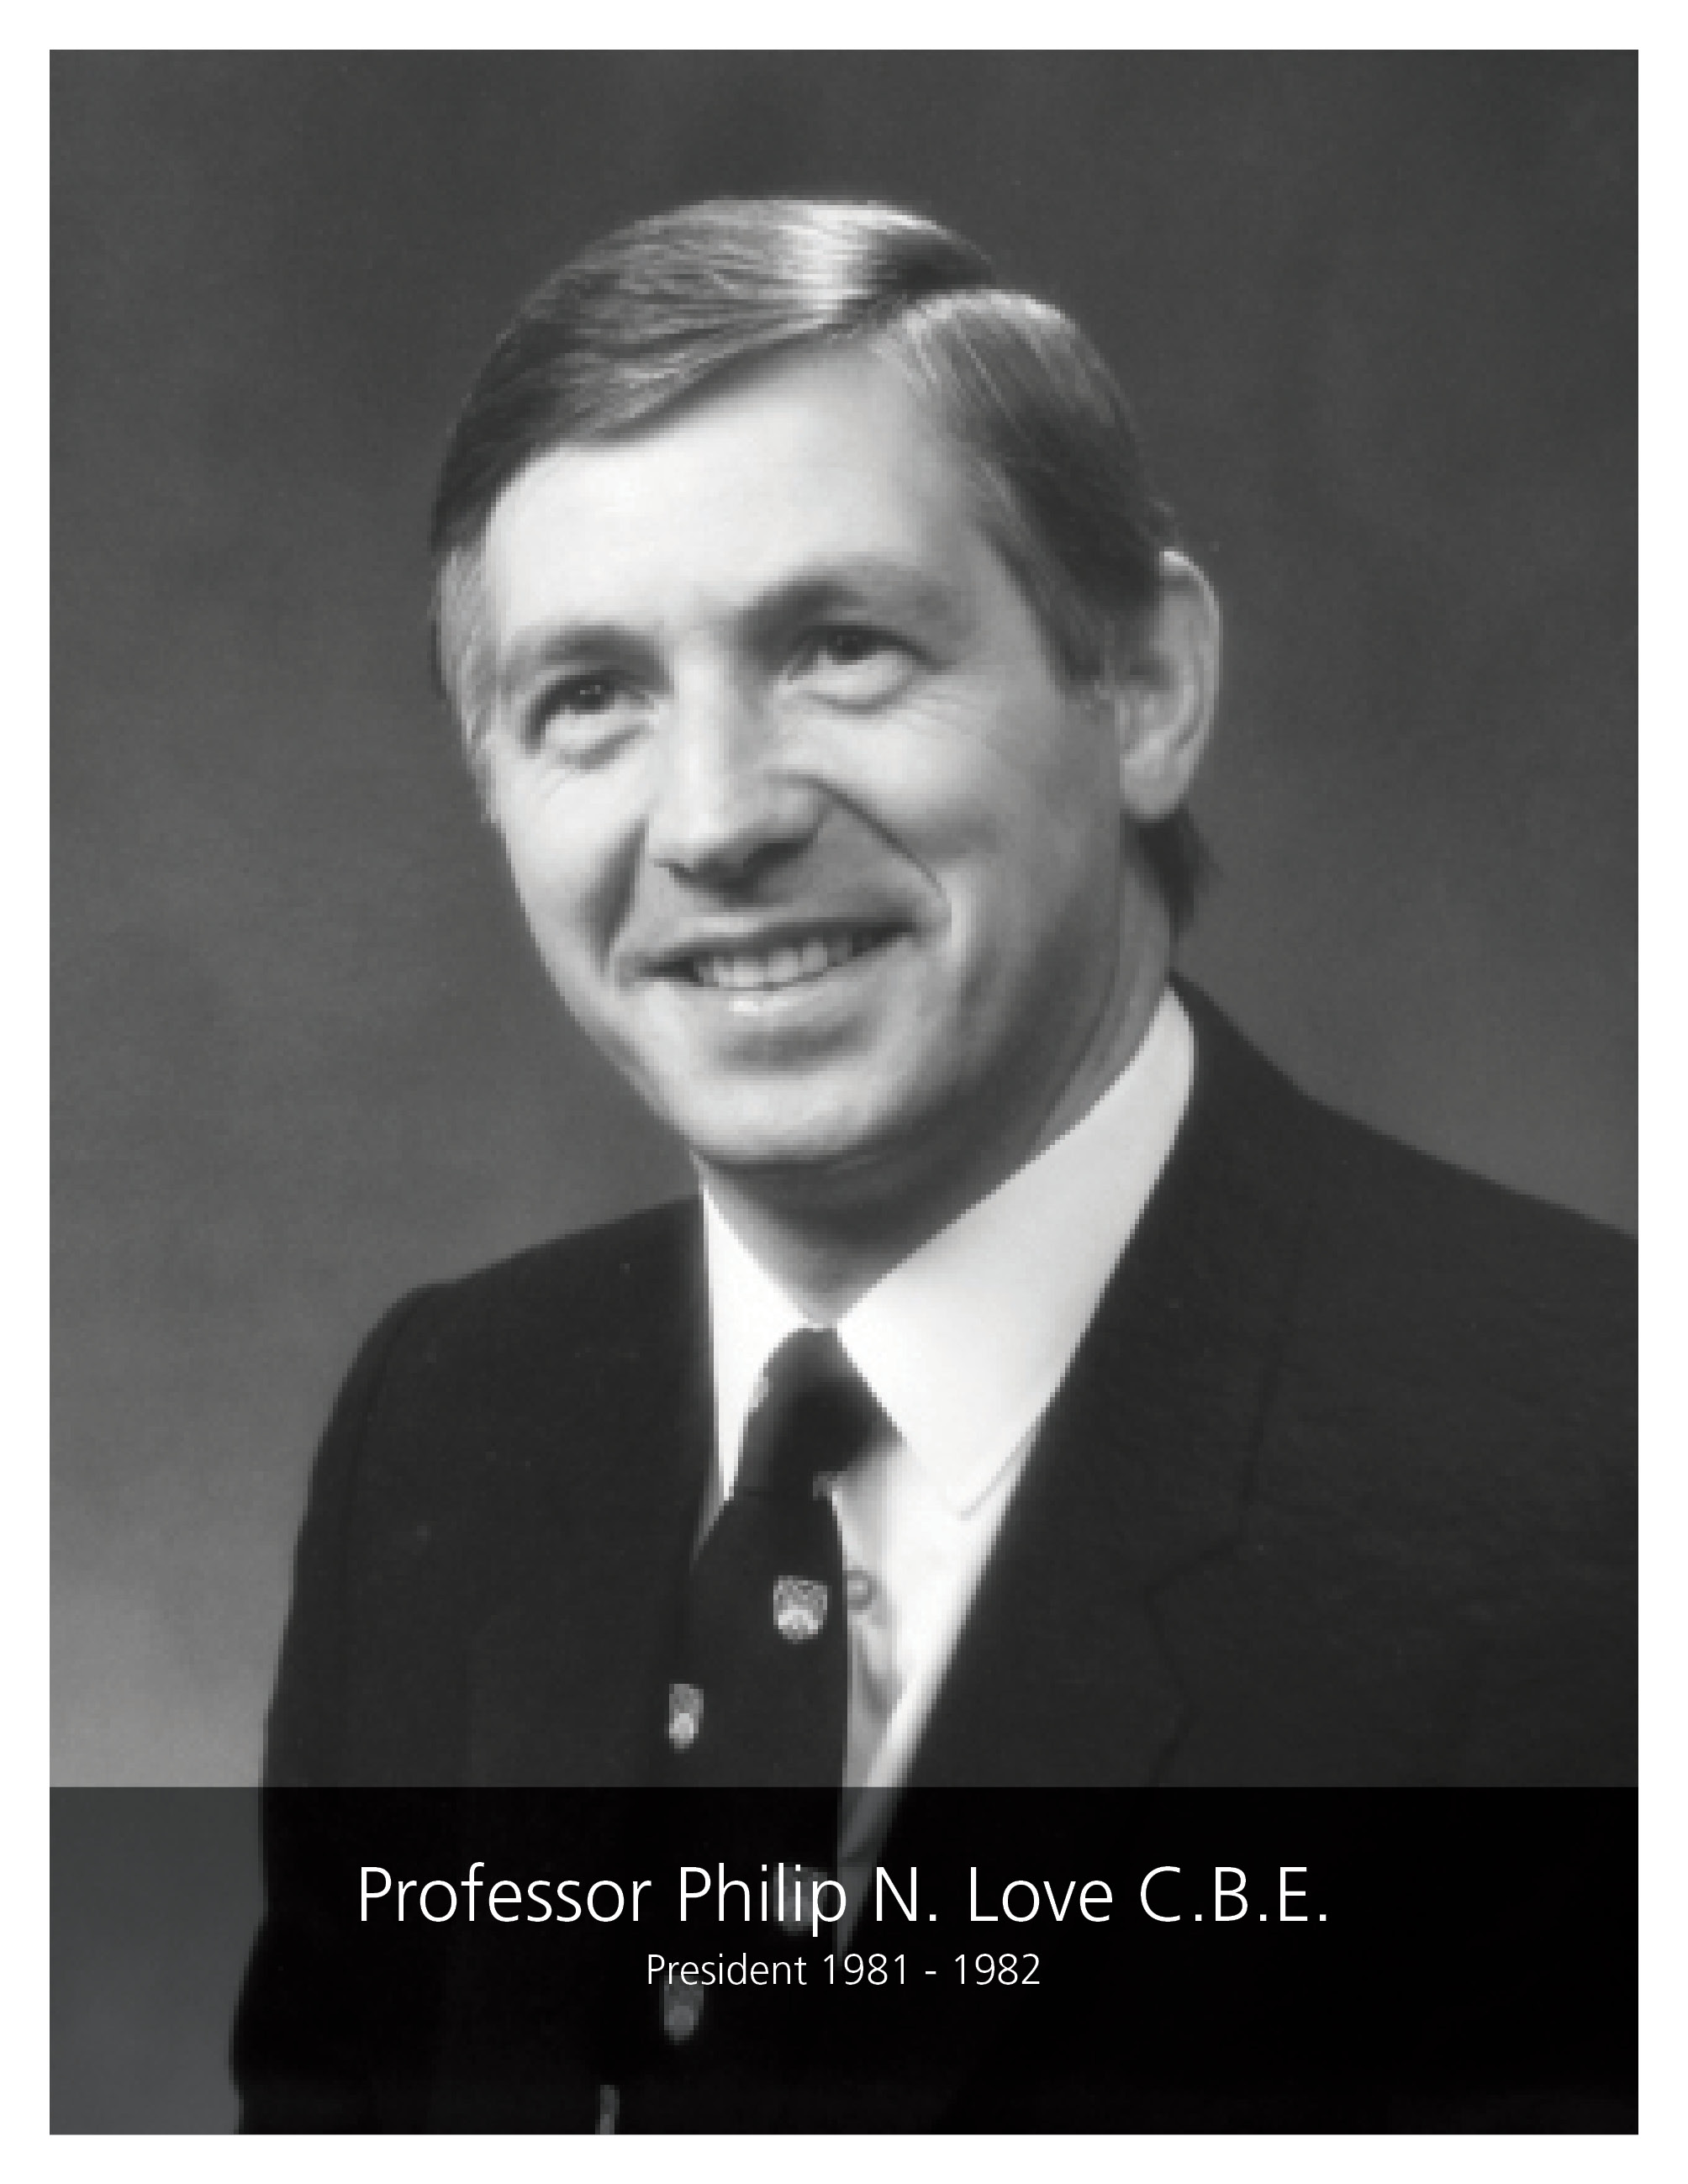 Professor Philip Love CBE